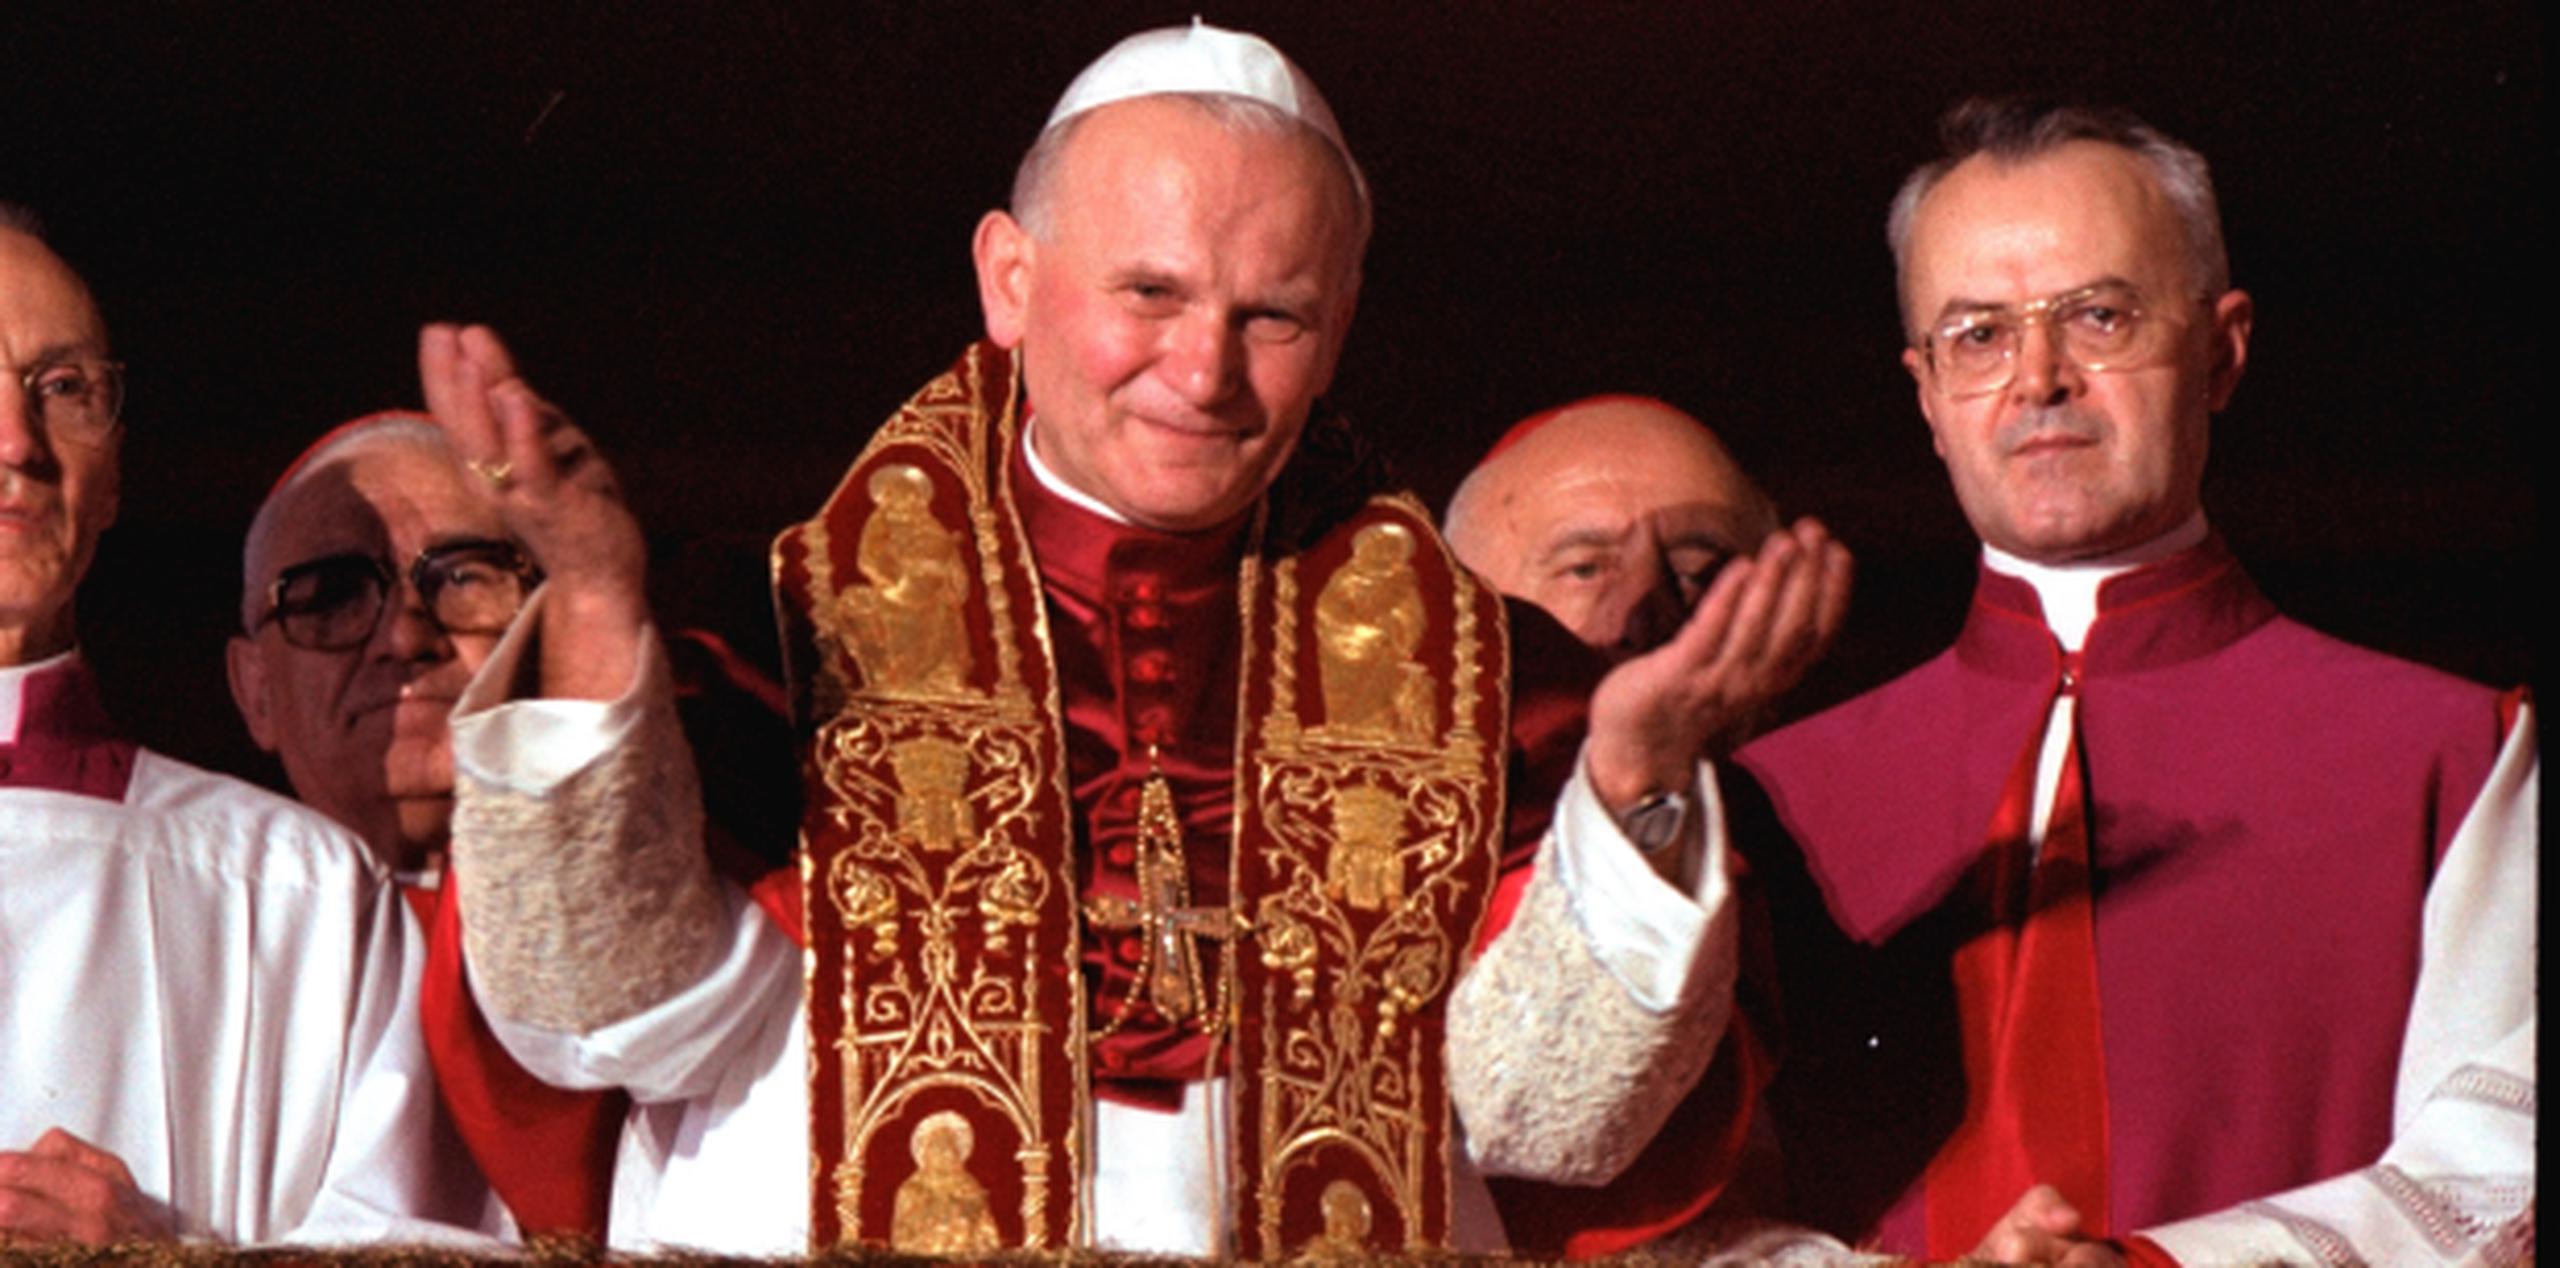 Juan Pablo ha sido considerado para la vía rápida de canonización desde que murió en 2005. (Archivo)